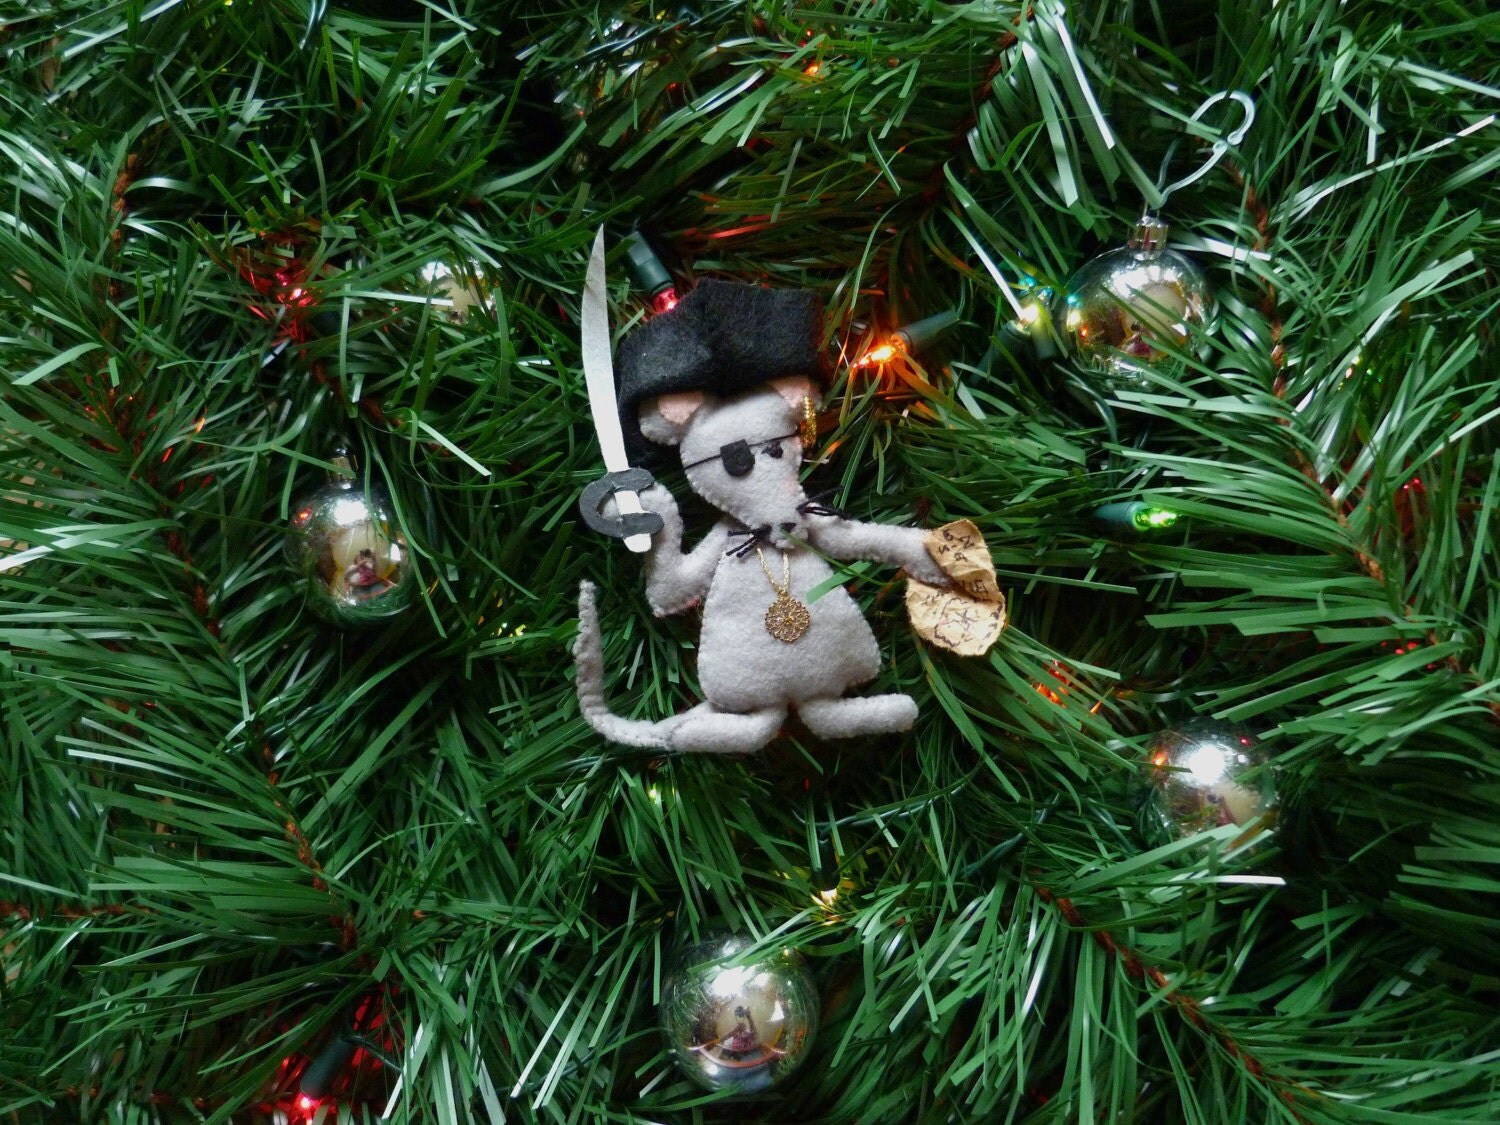 Felt Christmas Ornament Mouse Pirate Handmade Stitched Holiday Decoration Home Decor HometownUSA Original